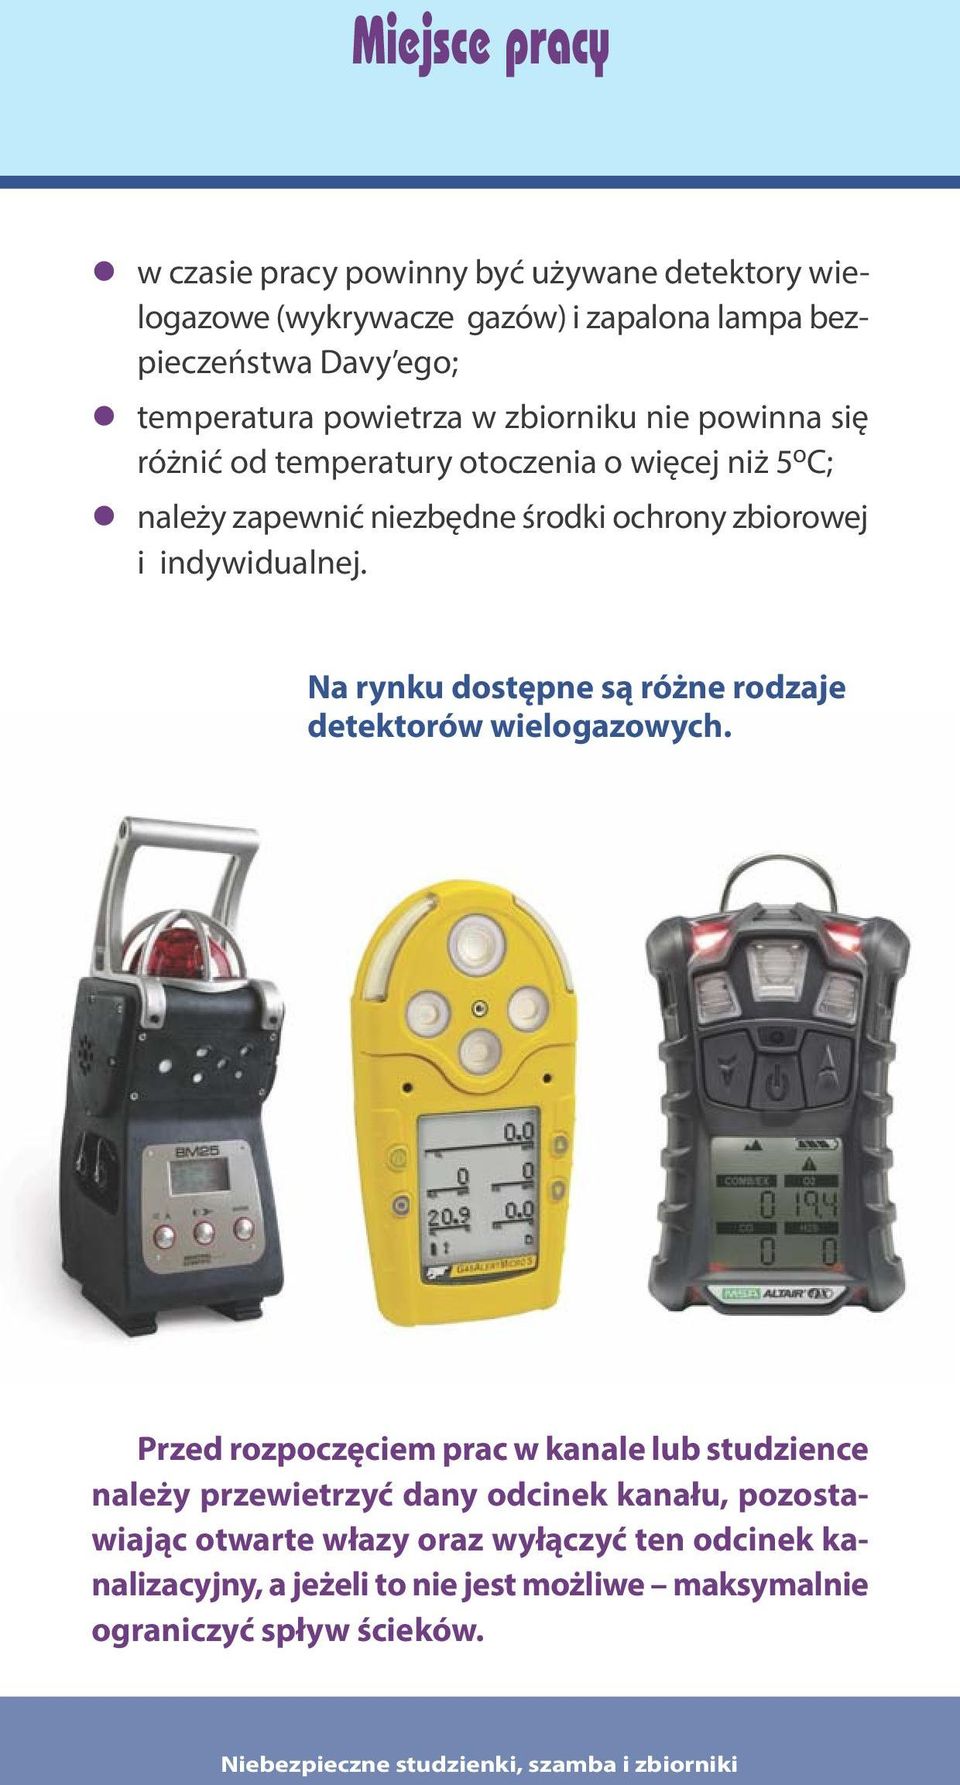 indywidualnej. Na rynku dostępne są różne rodzaje detektorów wielogazowych.